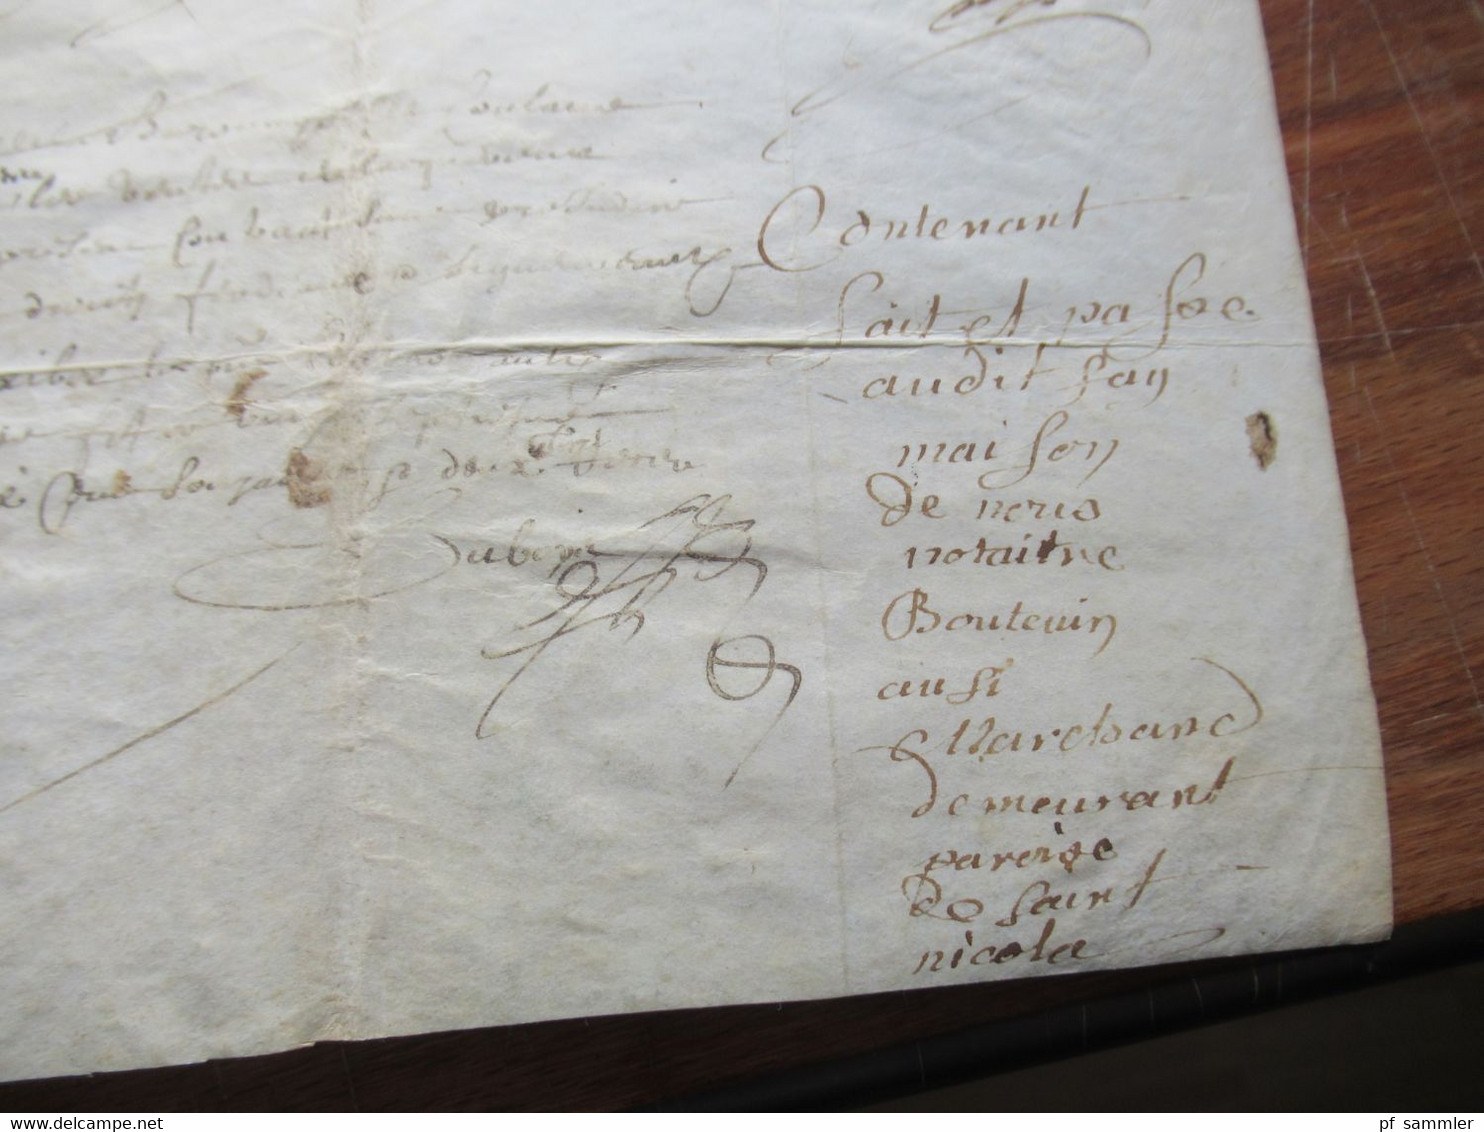 Frankreich Brief / Dokument vermutlich 17. Jahrhundert mit Autpgraphen / Schnörkelunterschriften!